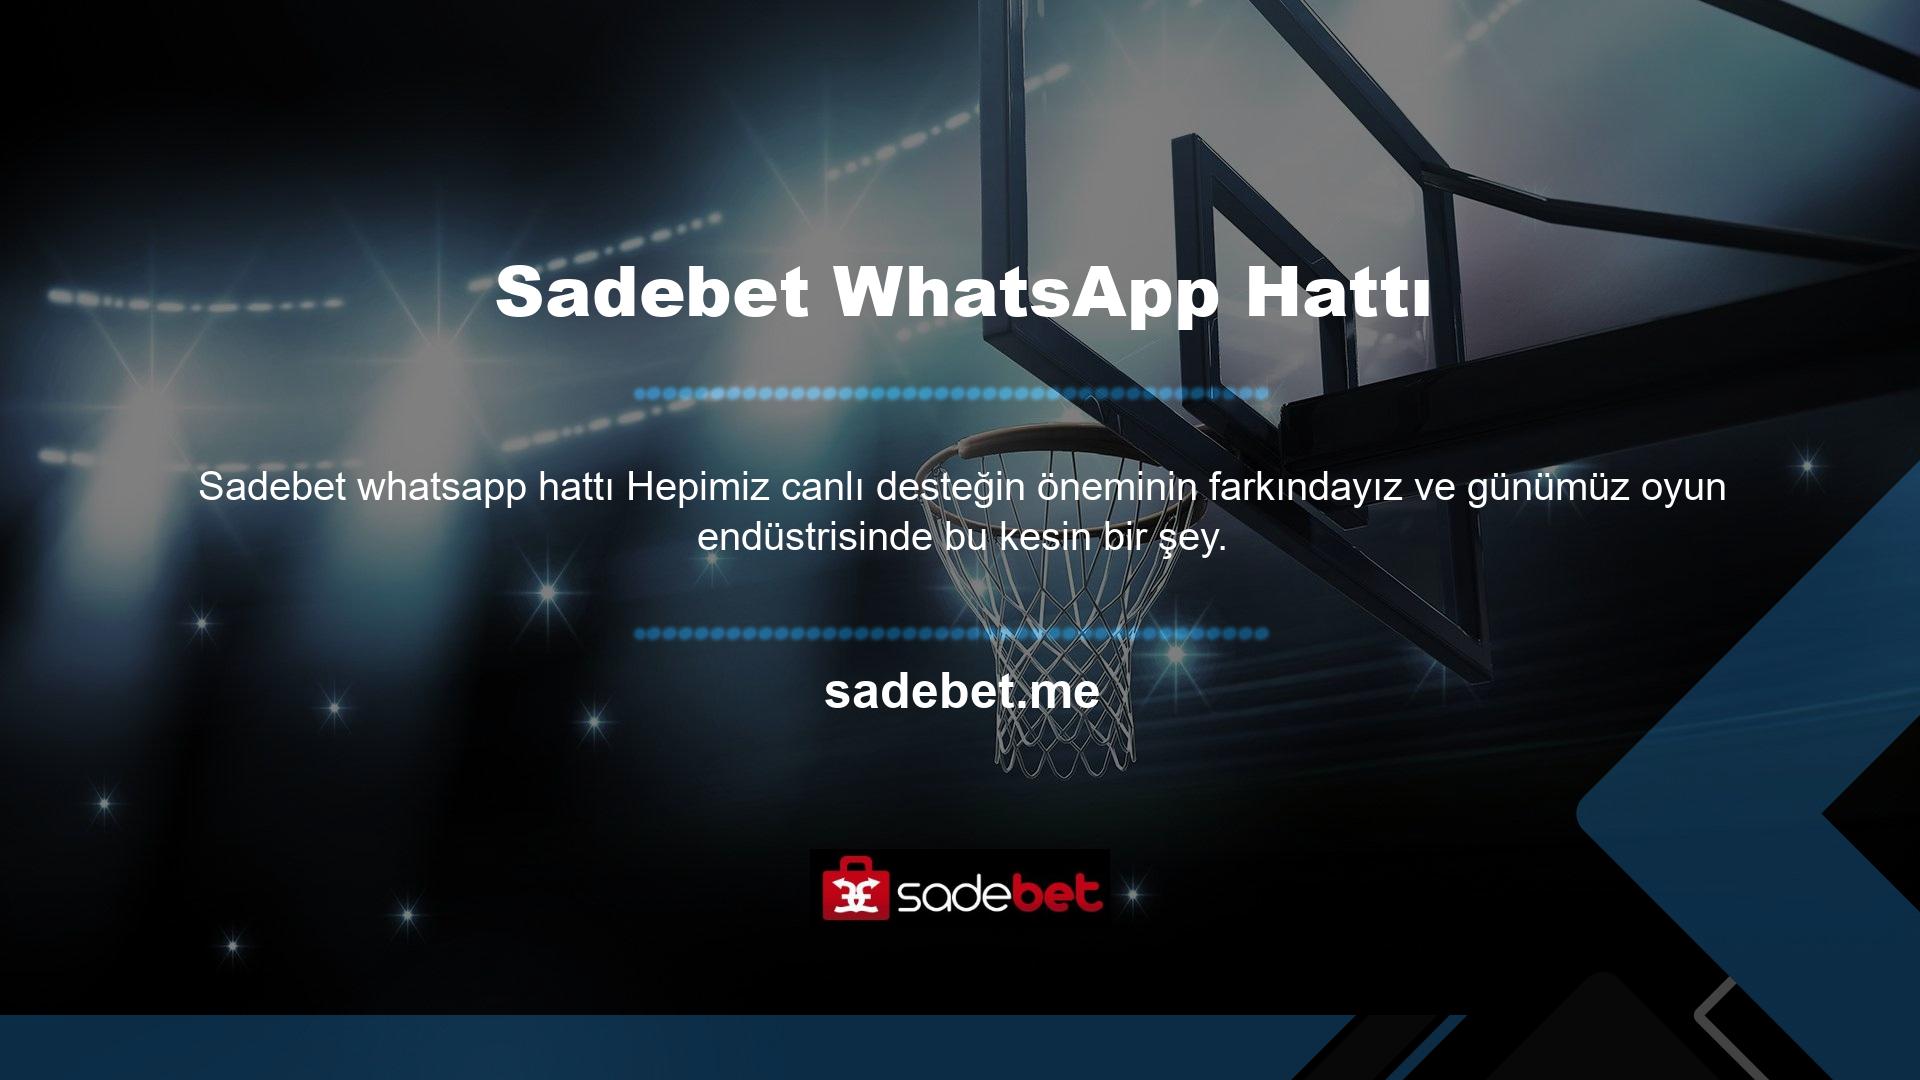 Ancak Sadebet, WhatsApp hattı hizmetini açtı ve normal bir şekilde VIP hizmetleri sunmaya başladı